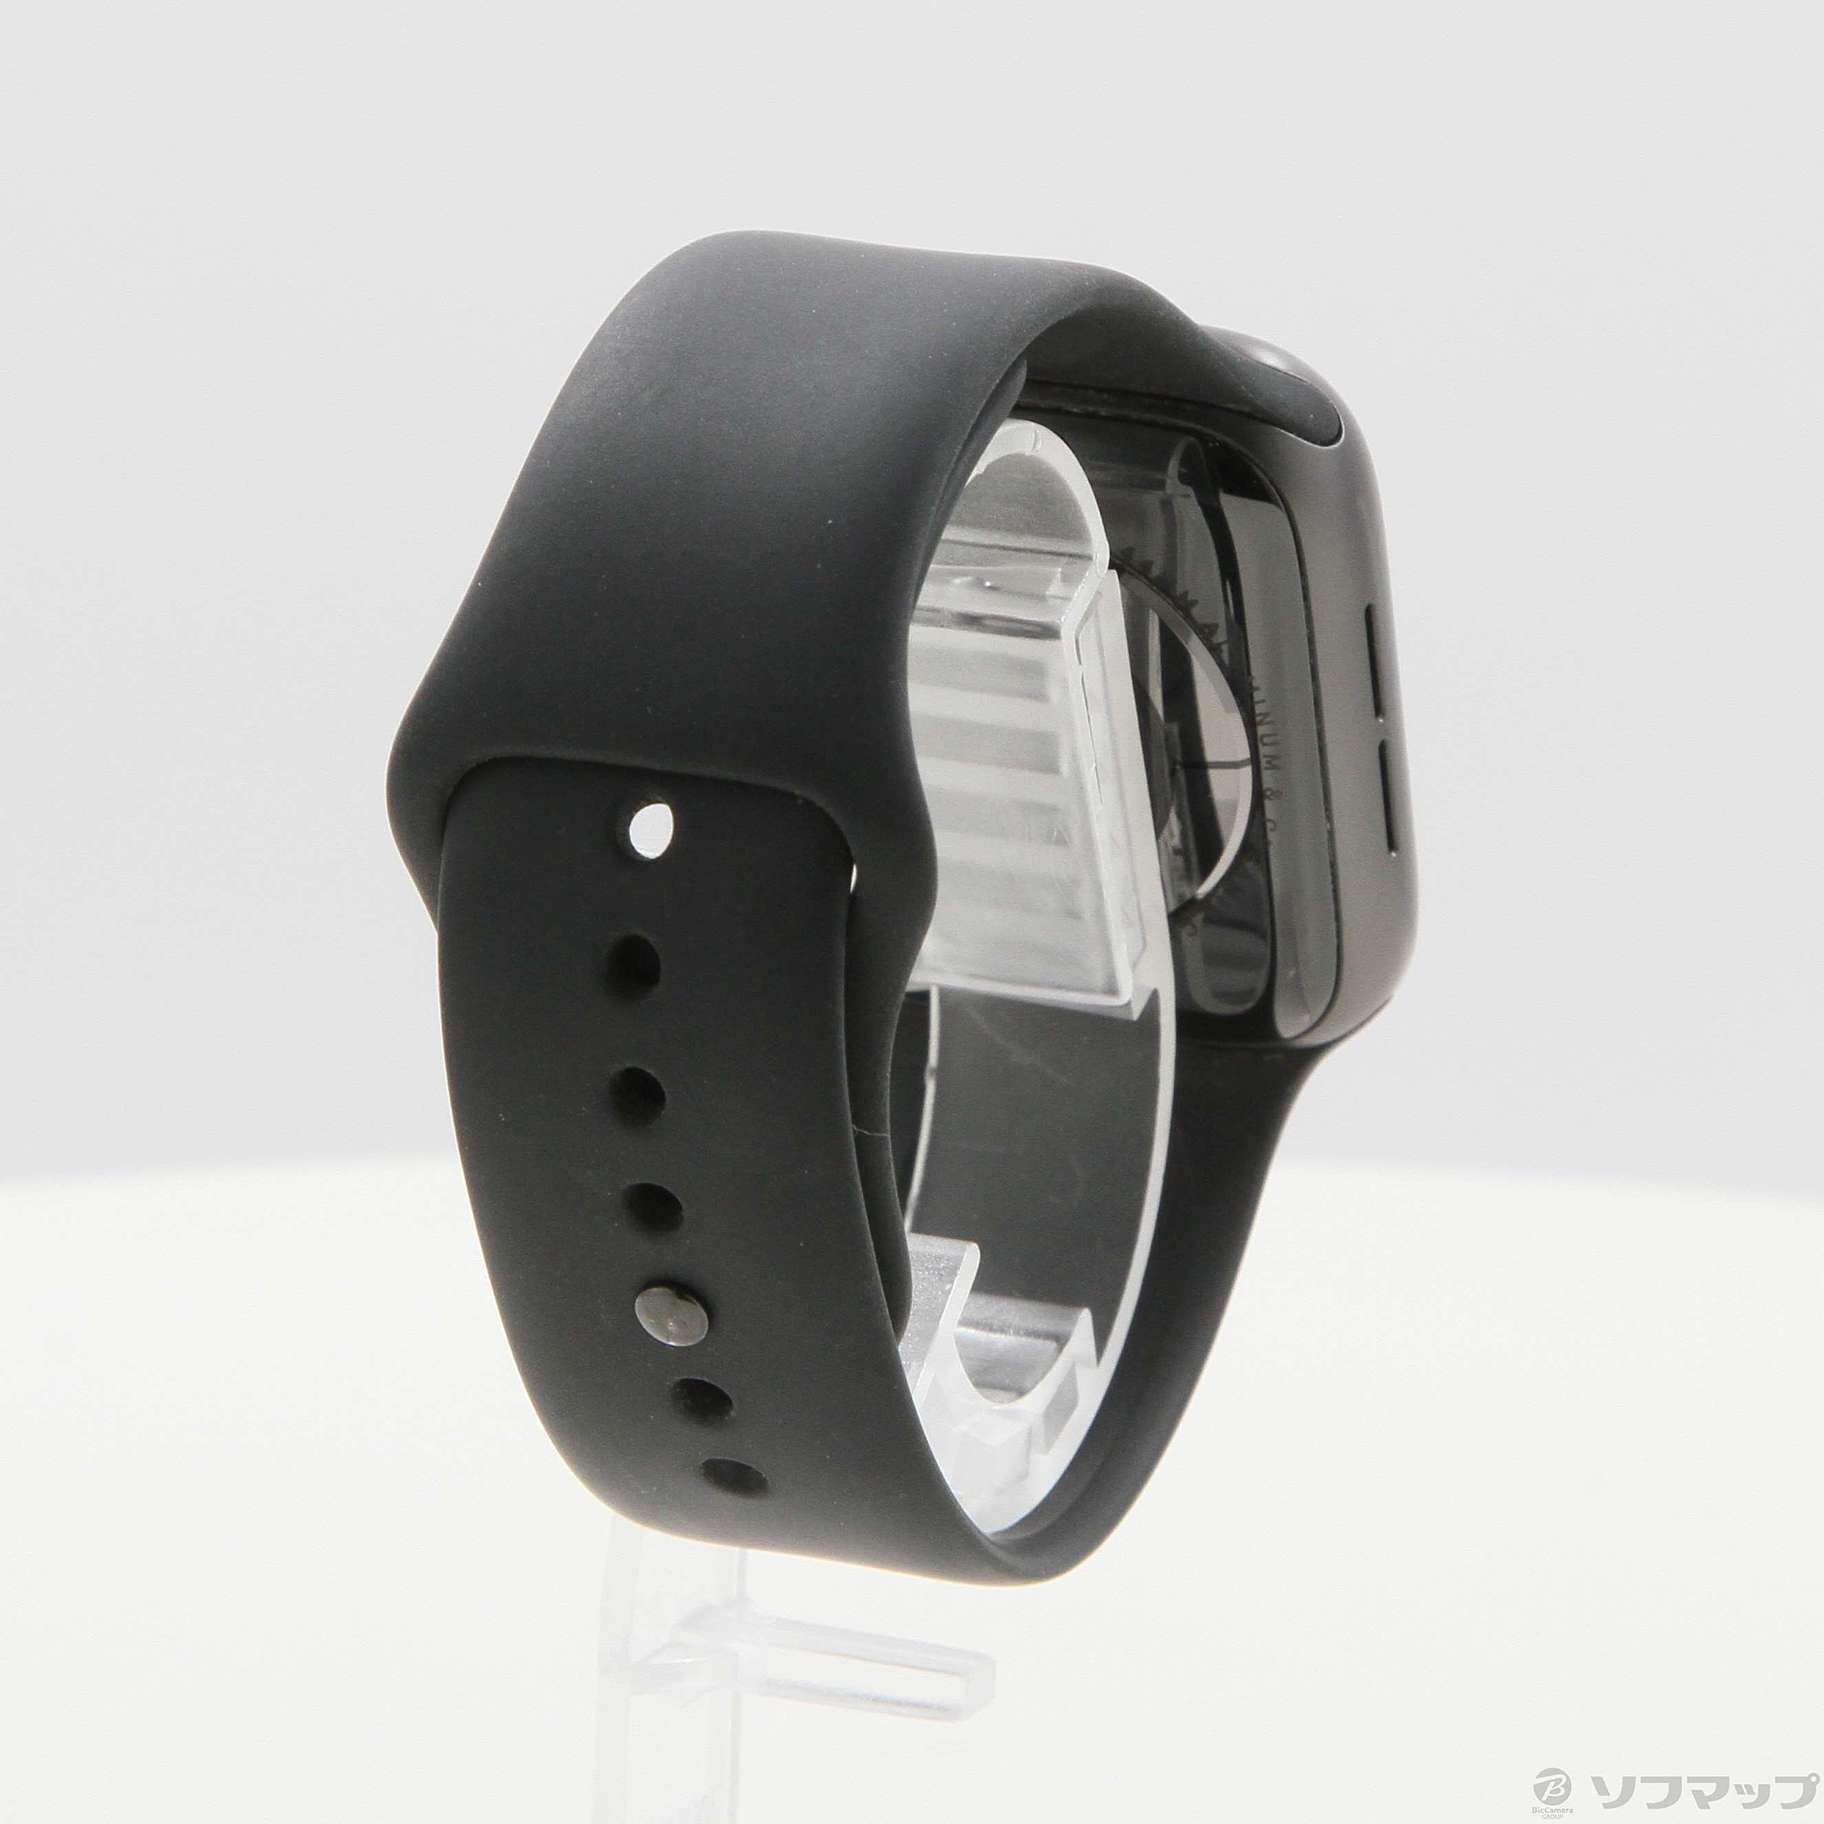 中古品〕 Apple Watch Series 5 GPS 44mm スペースグレイアルミニウム ...